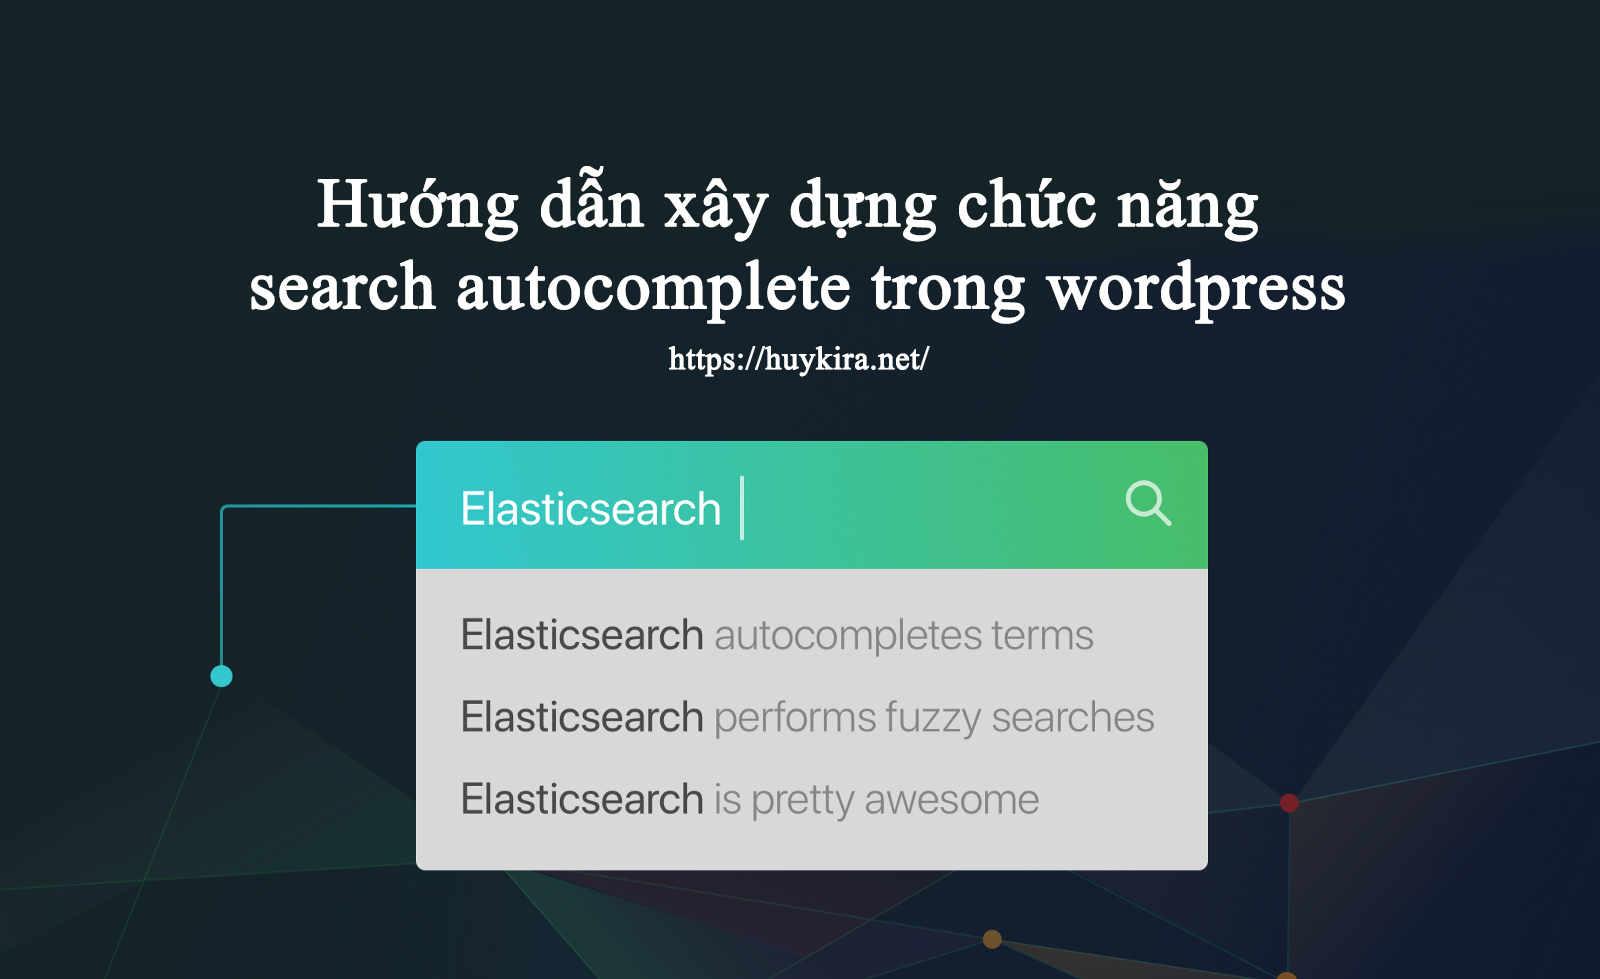 Hướng dẫn xây dựng chức năng search autocomplete trong wordpress